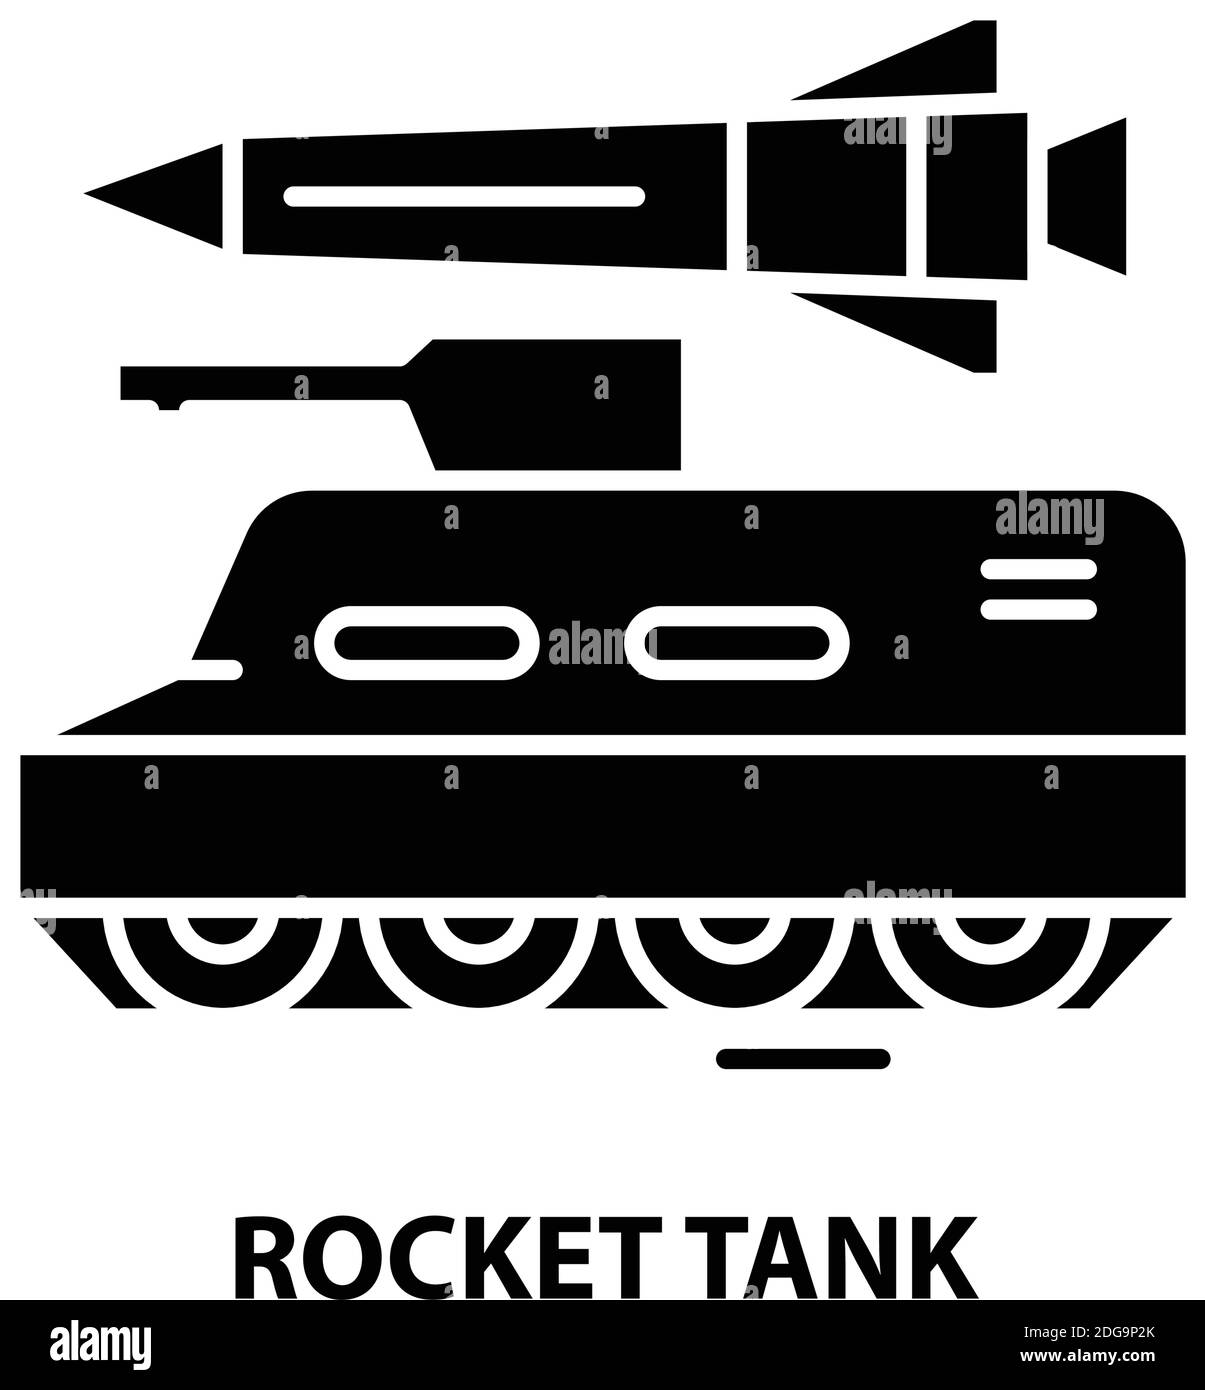 Raketentank-Symbol, schwarzes Vektorzeichen mit editierbaren Striche, Konzeptdarstellung Stock Vektor